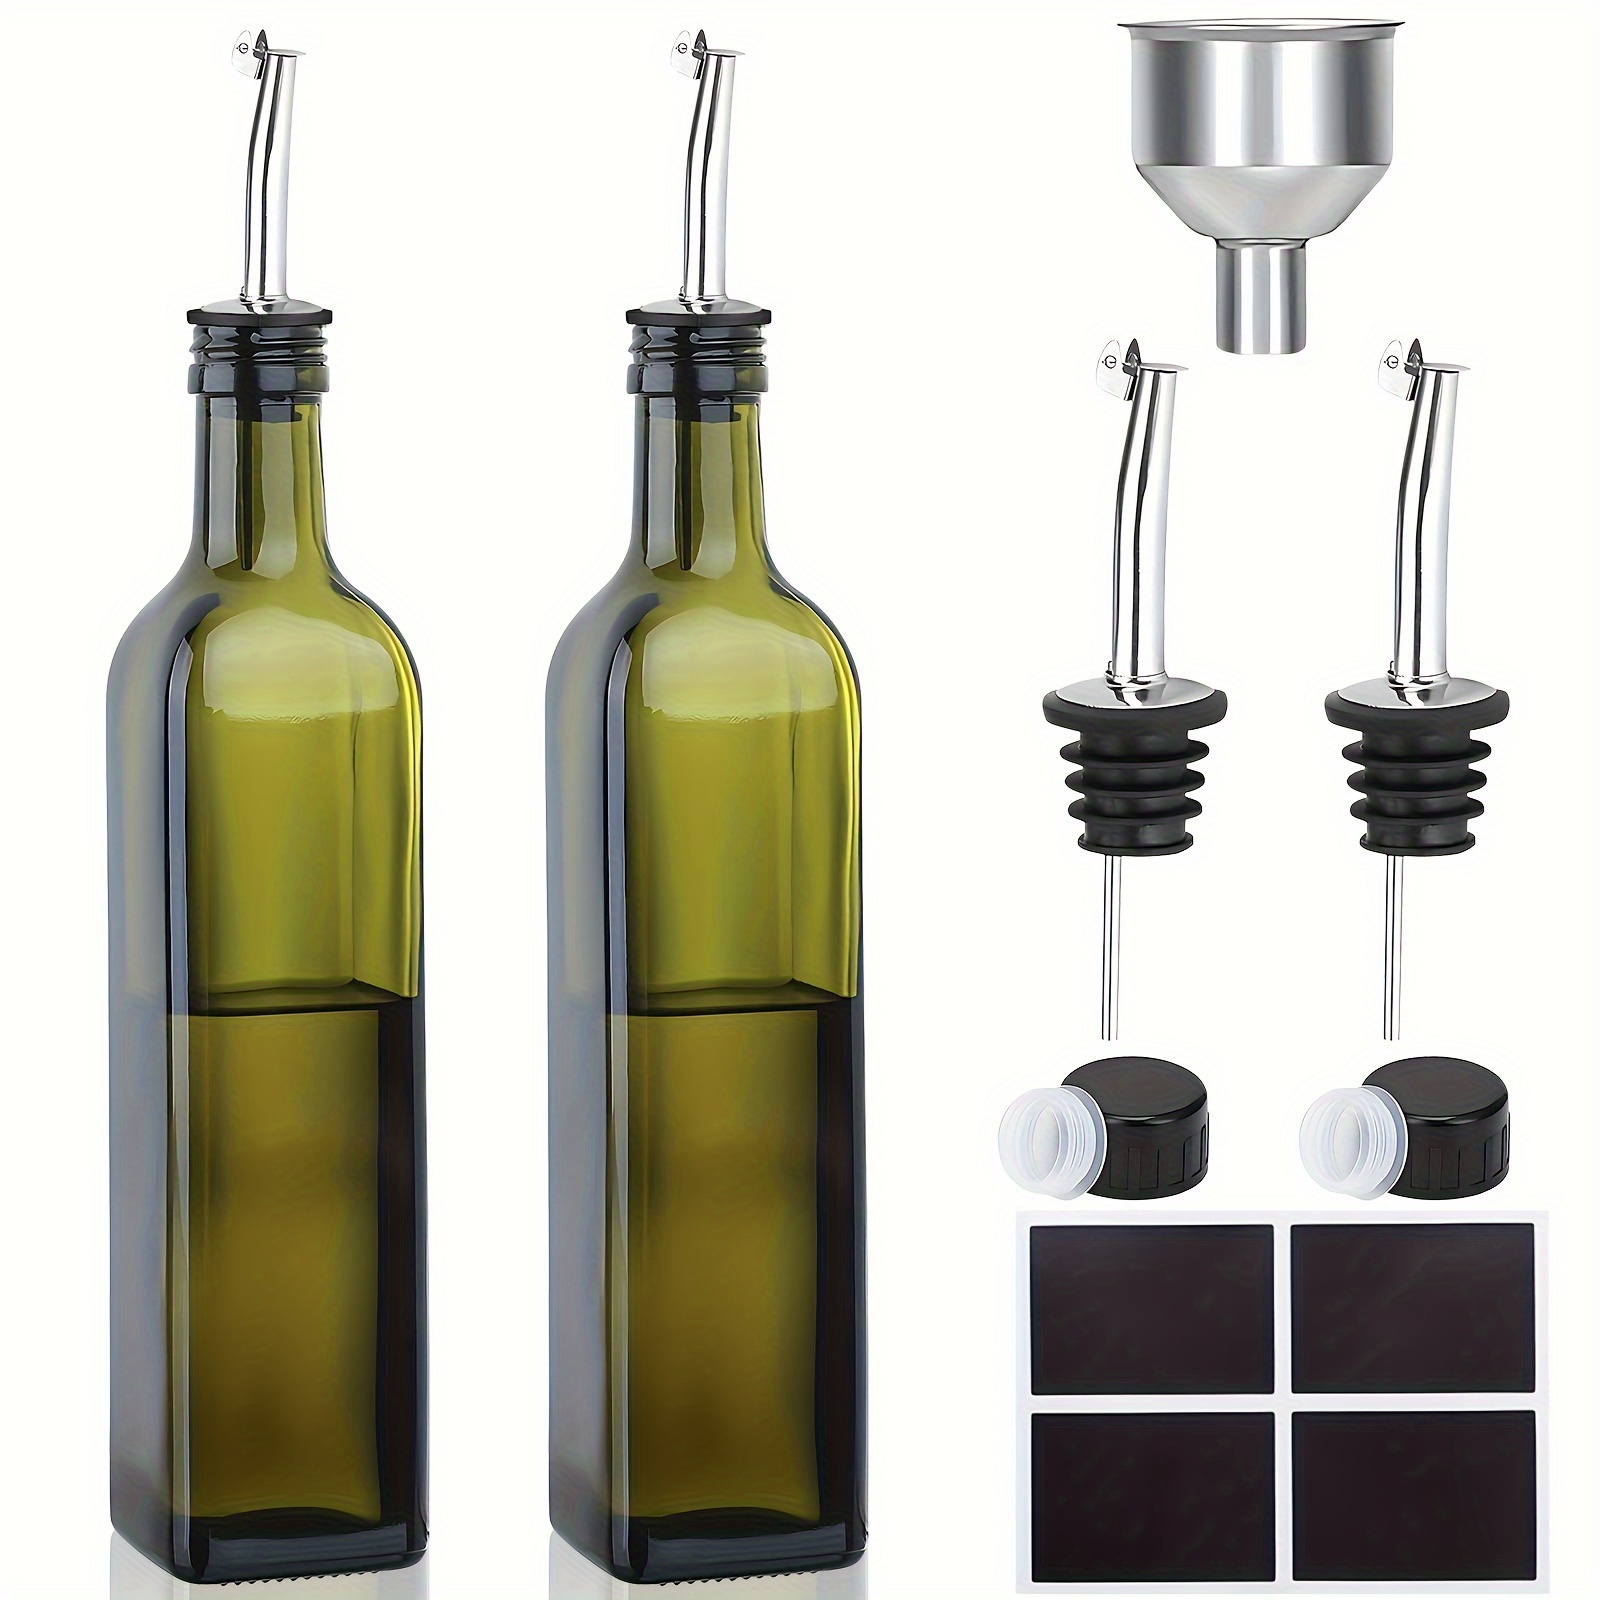 Vinagre de vidrio aceite de oliva botellas rellenables dispensador